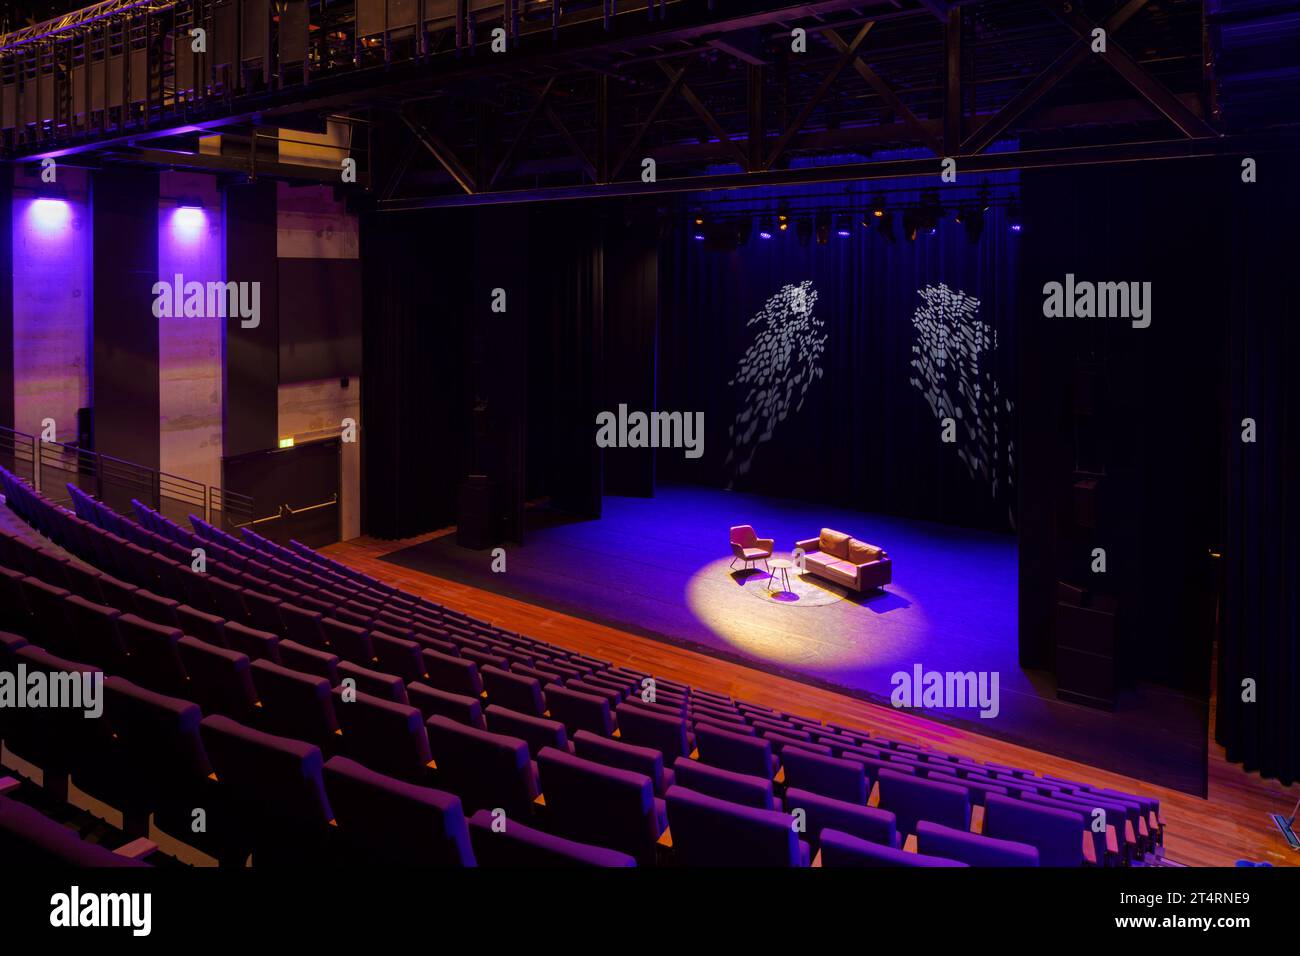 Kleiner Auditorium (kleiner zaal) von der Rückseite der Sitzplätze aus gesehen. Theater Zuidplein, Rotterdam, Rotterdam, Niederlande. Architekt: De Zwarte Hond, 2020. Stockfoto